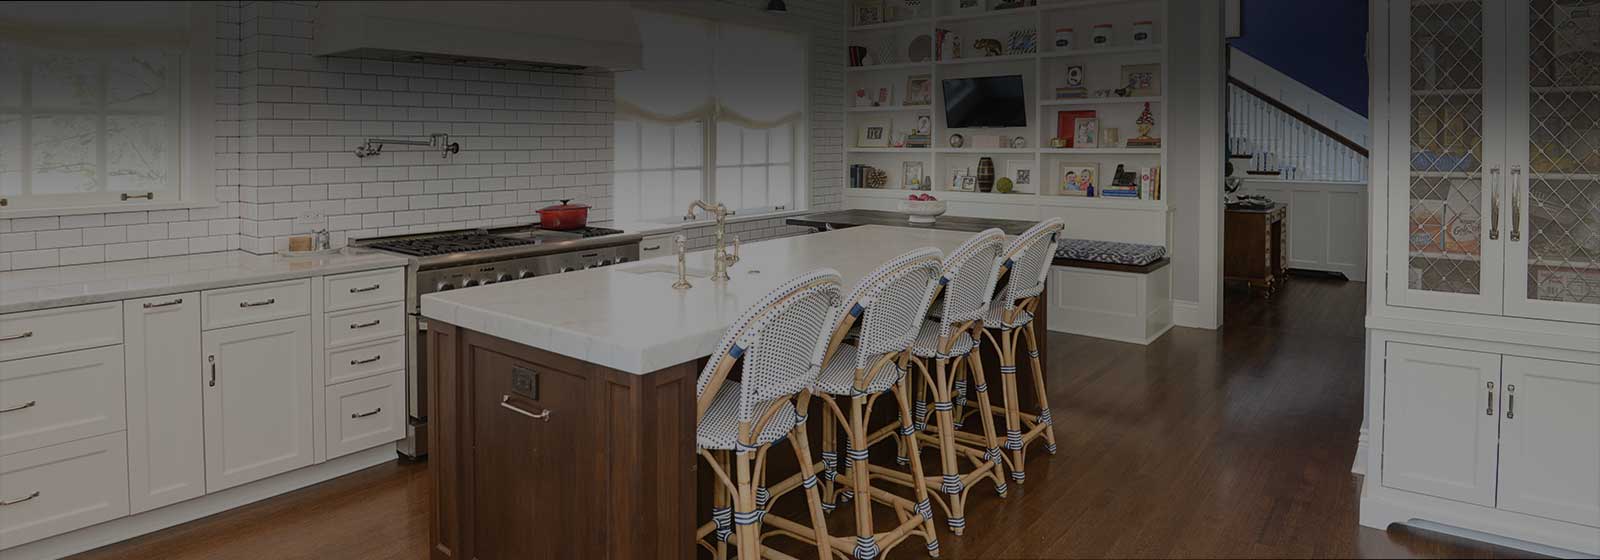 Elegant white kitchen transformation design photo in Kenilworth